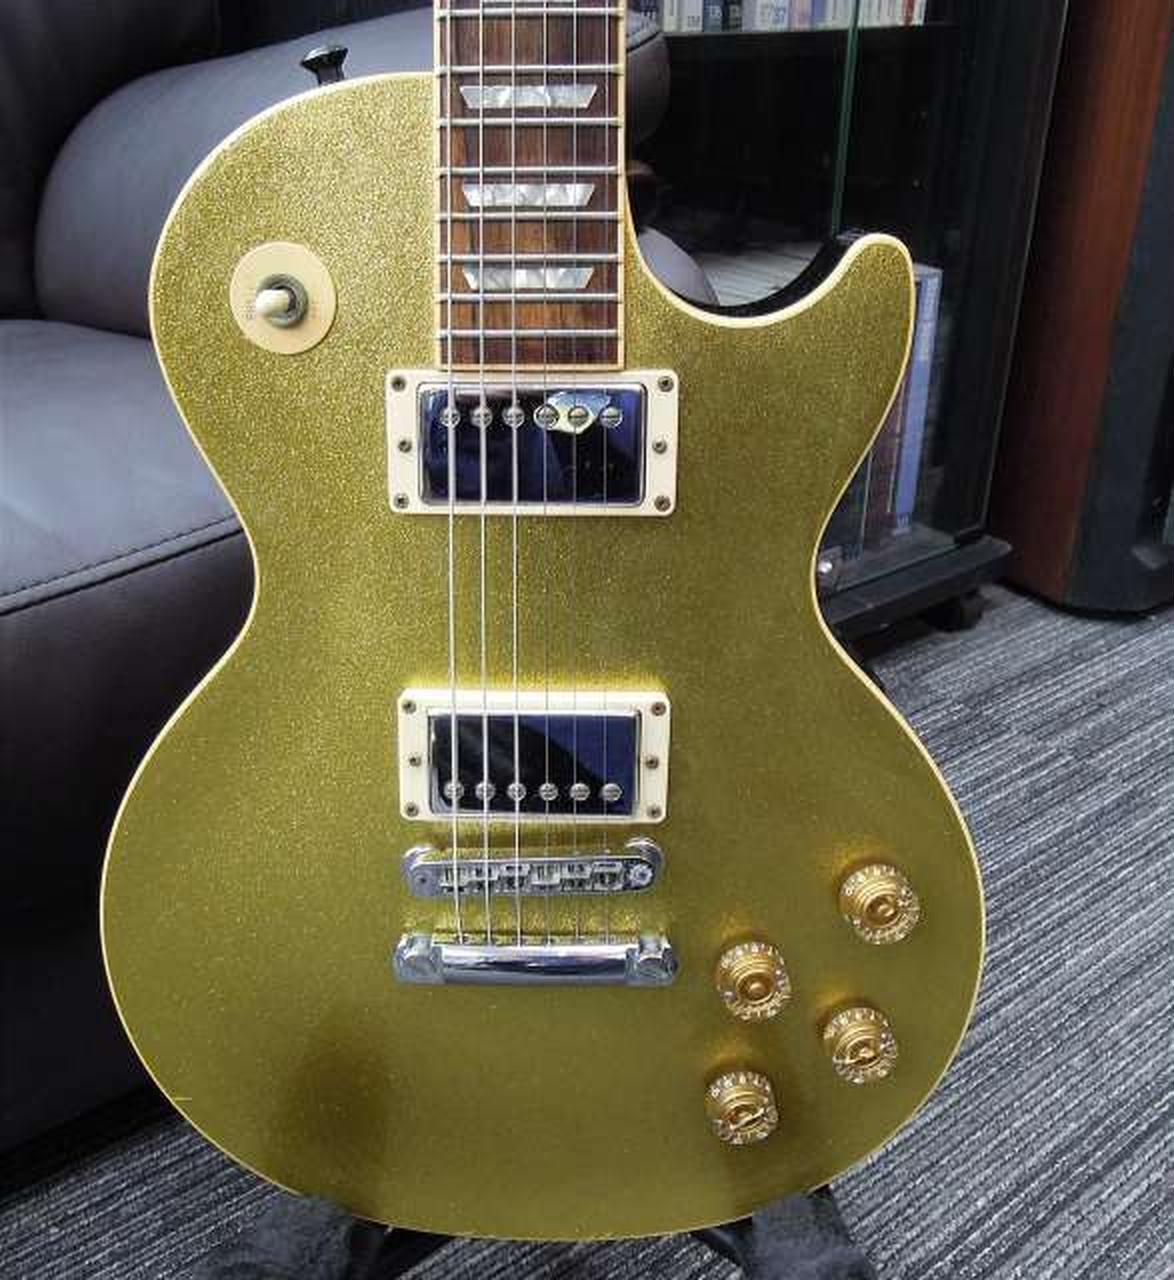 ポールタイプモデル番号STDスパークルゴールドエレクトリックギターと同じ写真